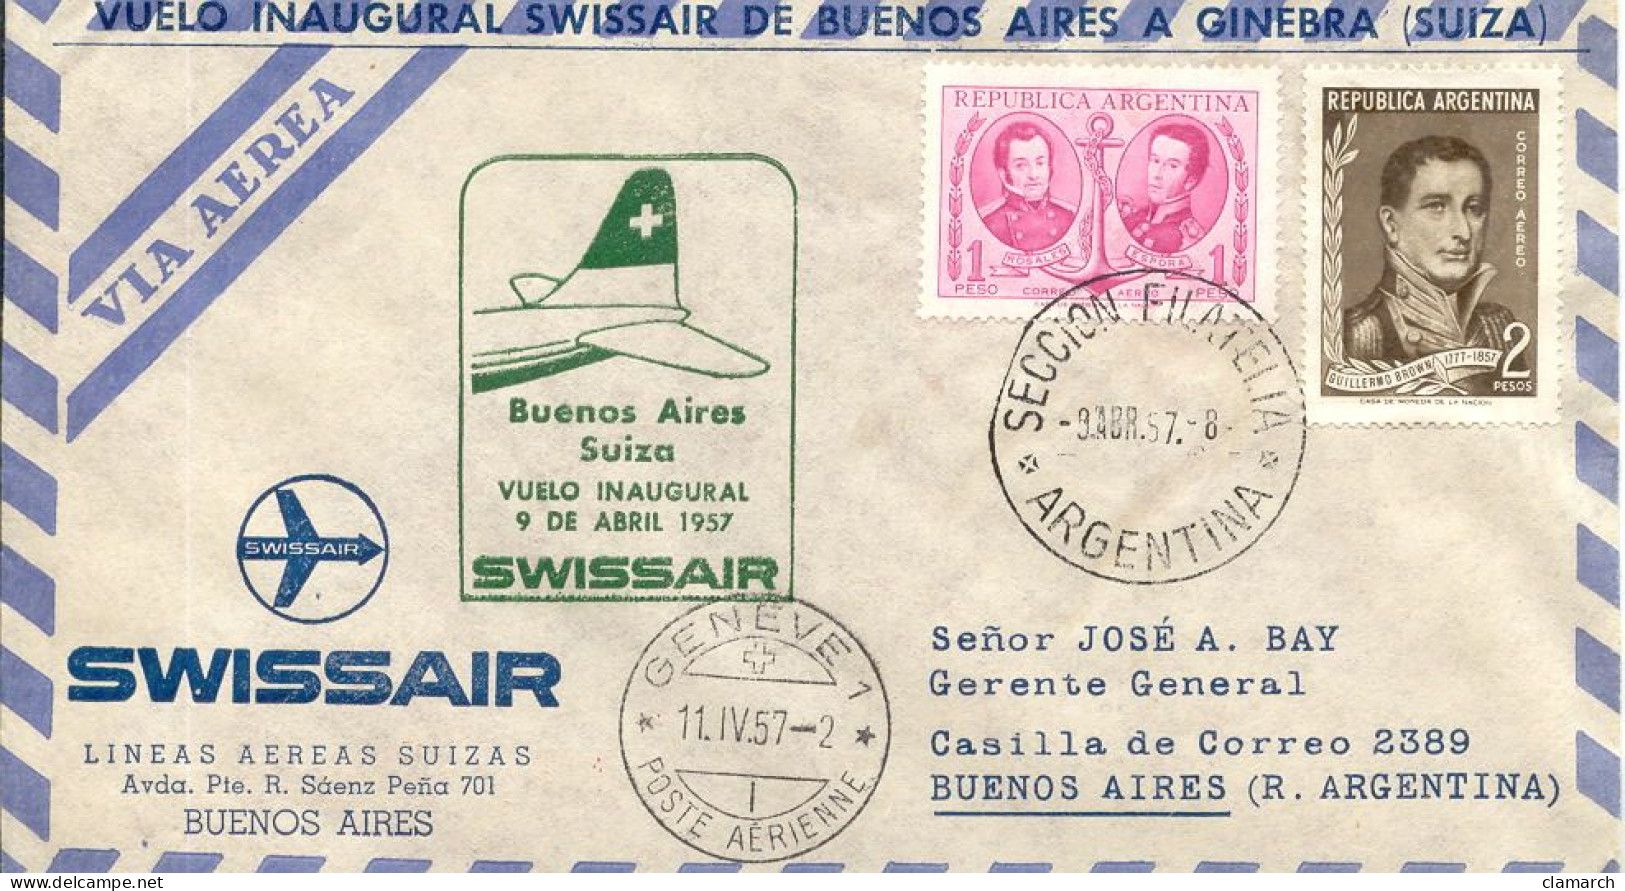 Aérophilatélie-Buenos Aires Suiza Vuelo Inaugural 9 De Abril1957 Par Swissair-cachet Seccion Filateli Du 9.4.57 - Eerste Vluchten